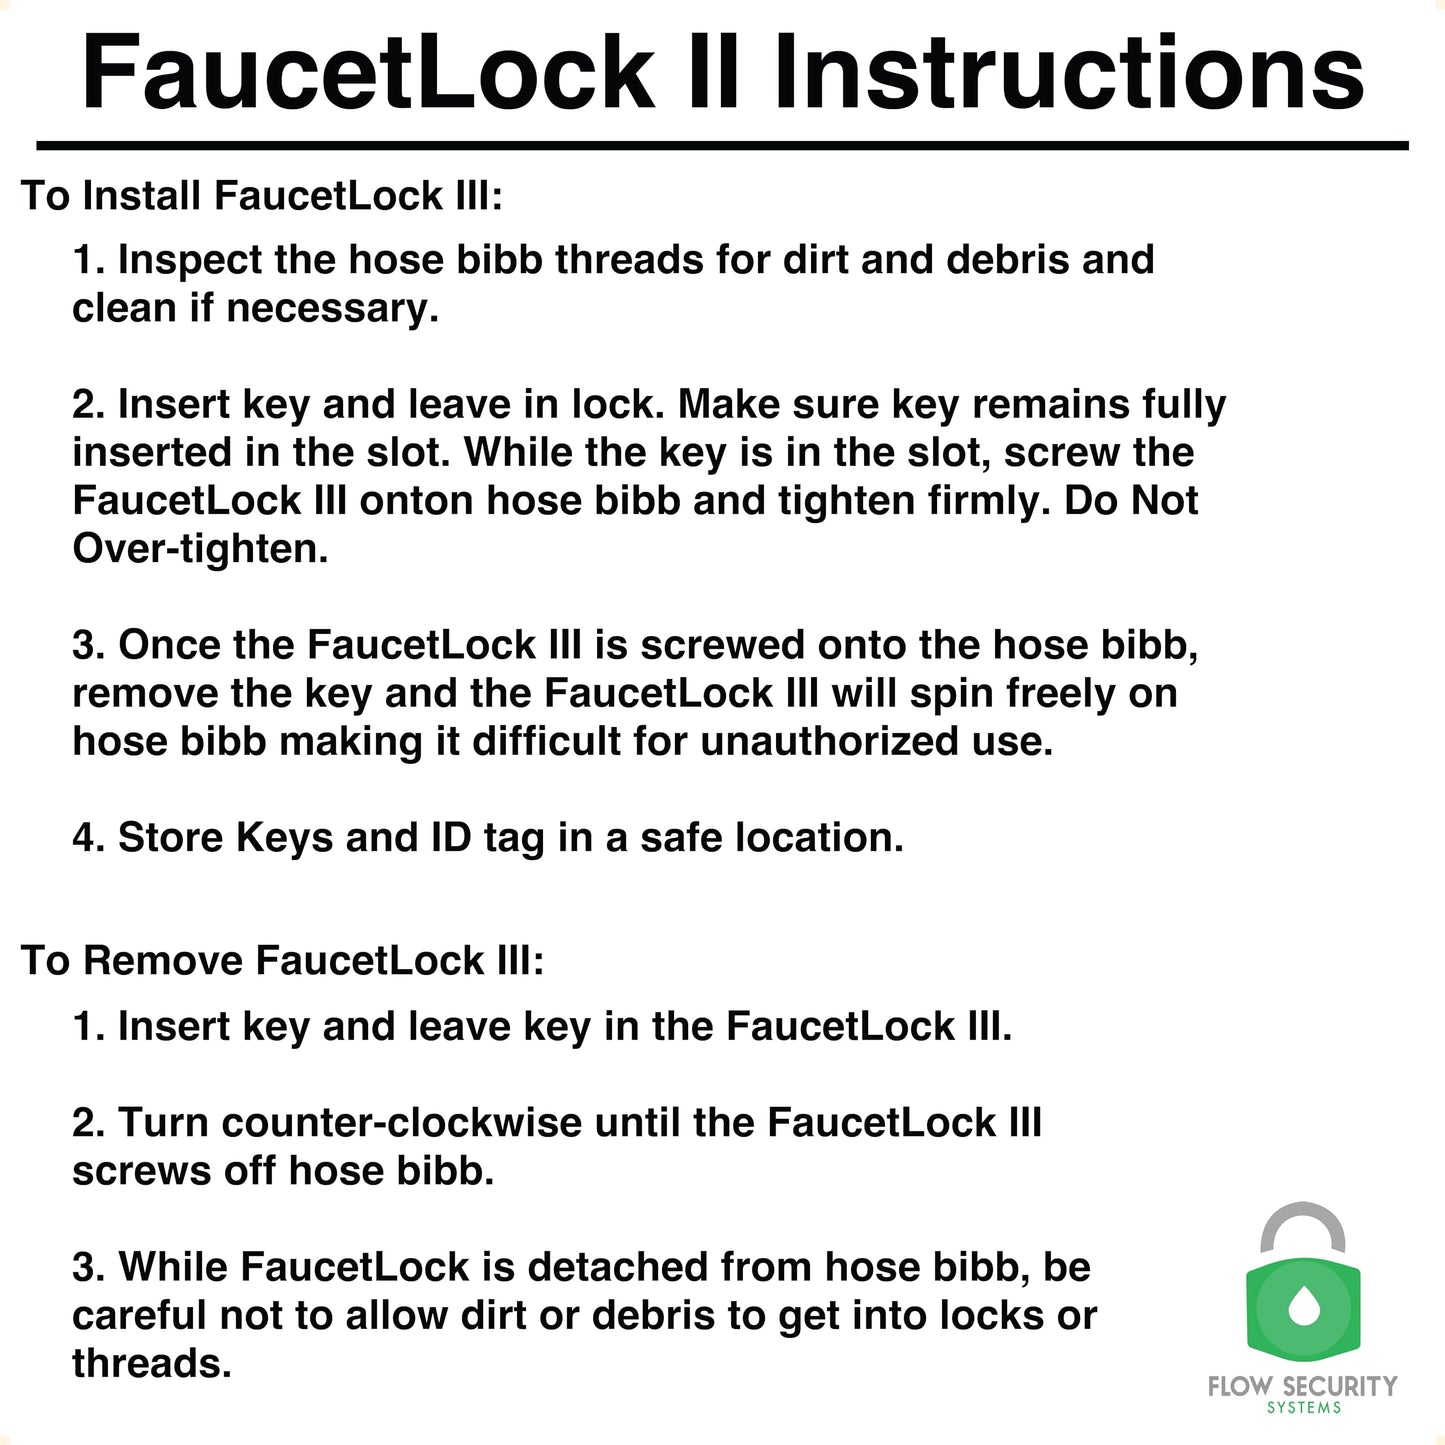 Faucet Lock II - Prevents Water Theft & Secures Outdoor Taps